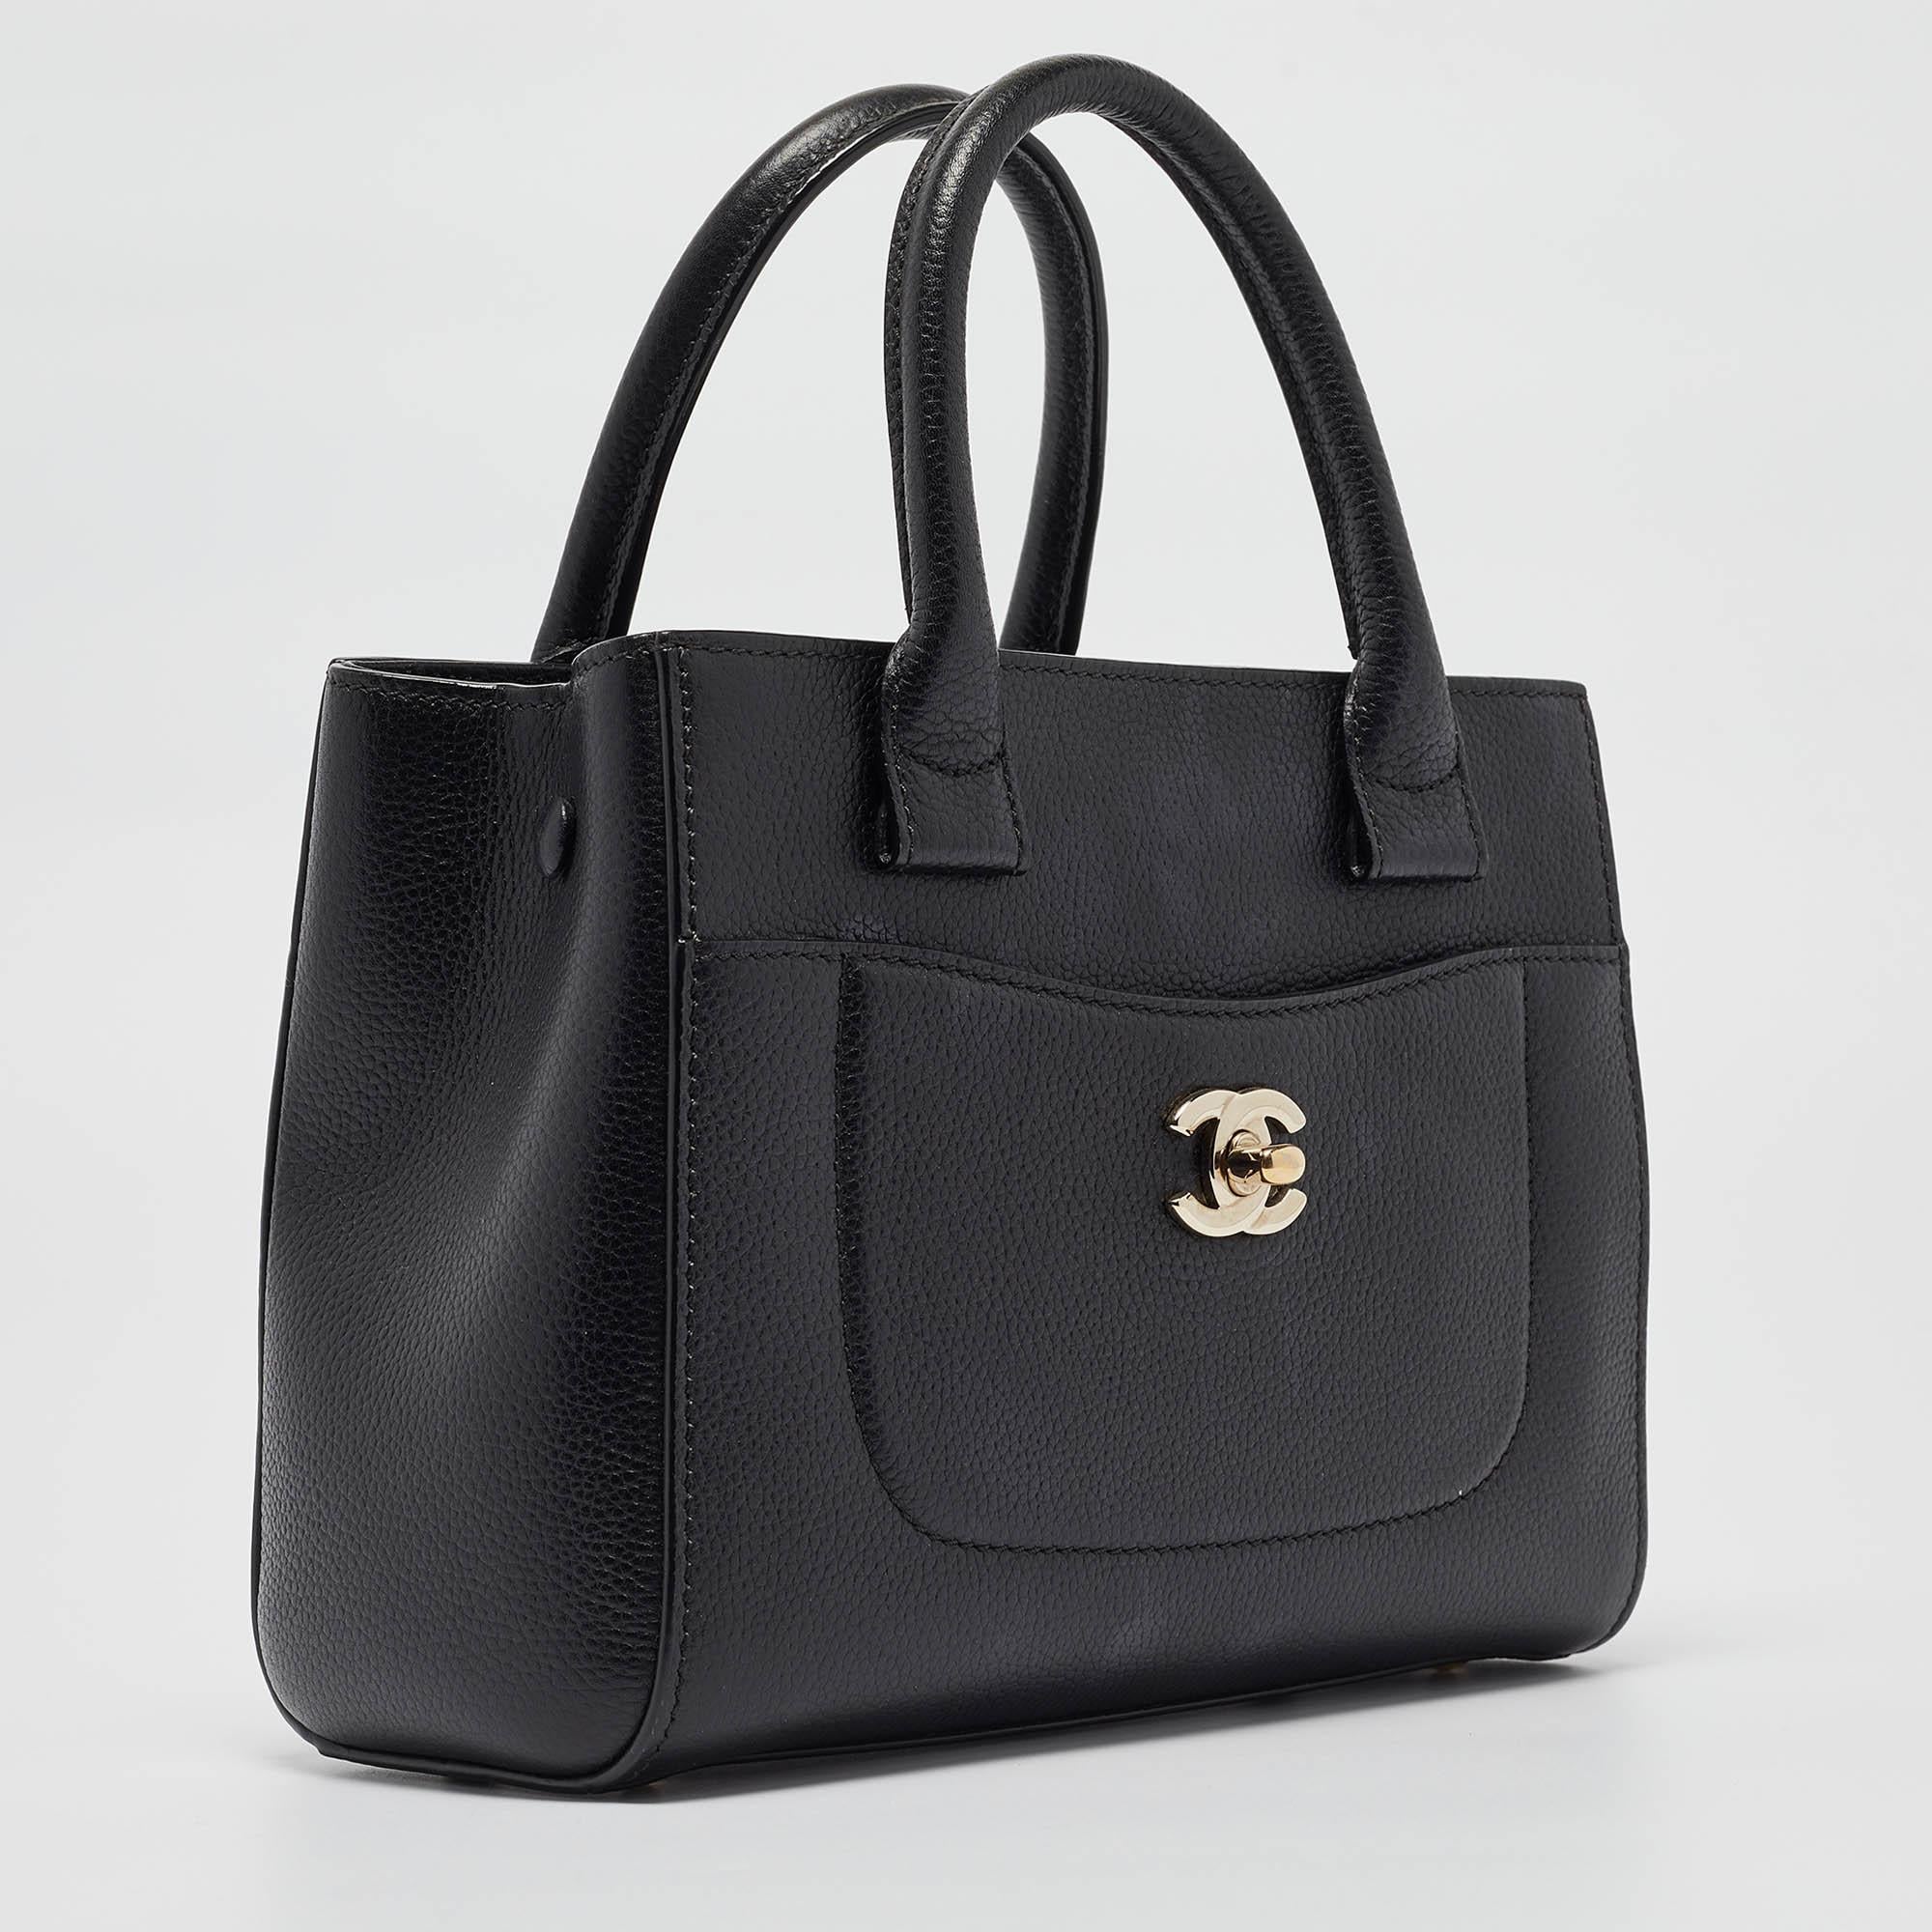 Chanel Black Leather Mini Neo Executive Tote In Good Condition For Sale In Dubai, Al Qouz 2